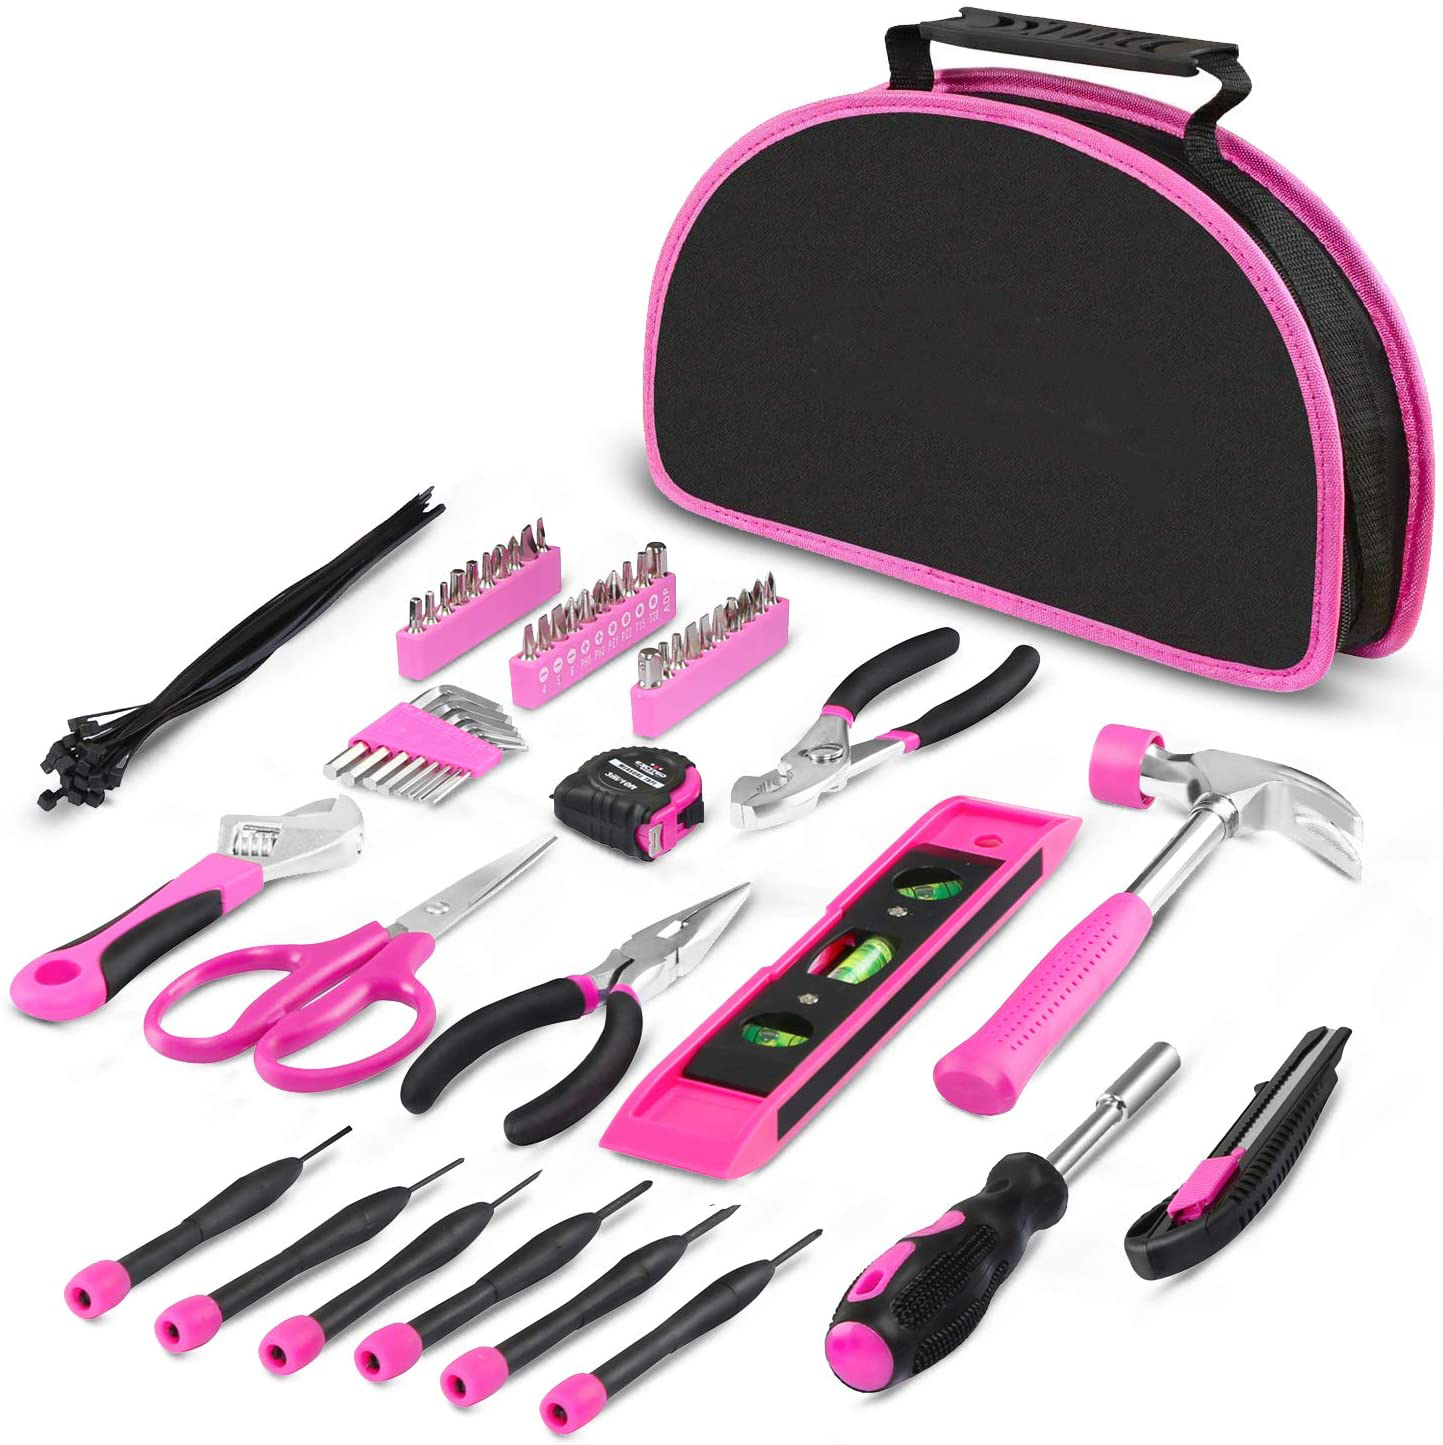 Conjuntos de ferramentas manuais/conjuntos de ferramentas para senhoras de reparação doméstica, rosa Conjunto de ferramentas e hardware/ferramentas de carinho